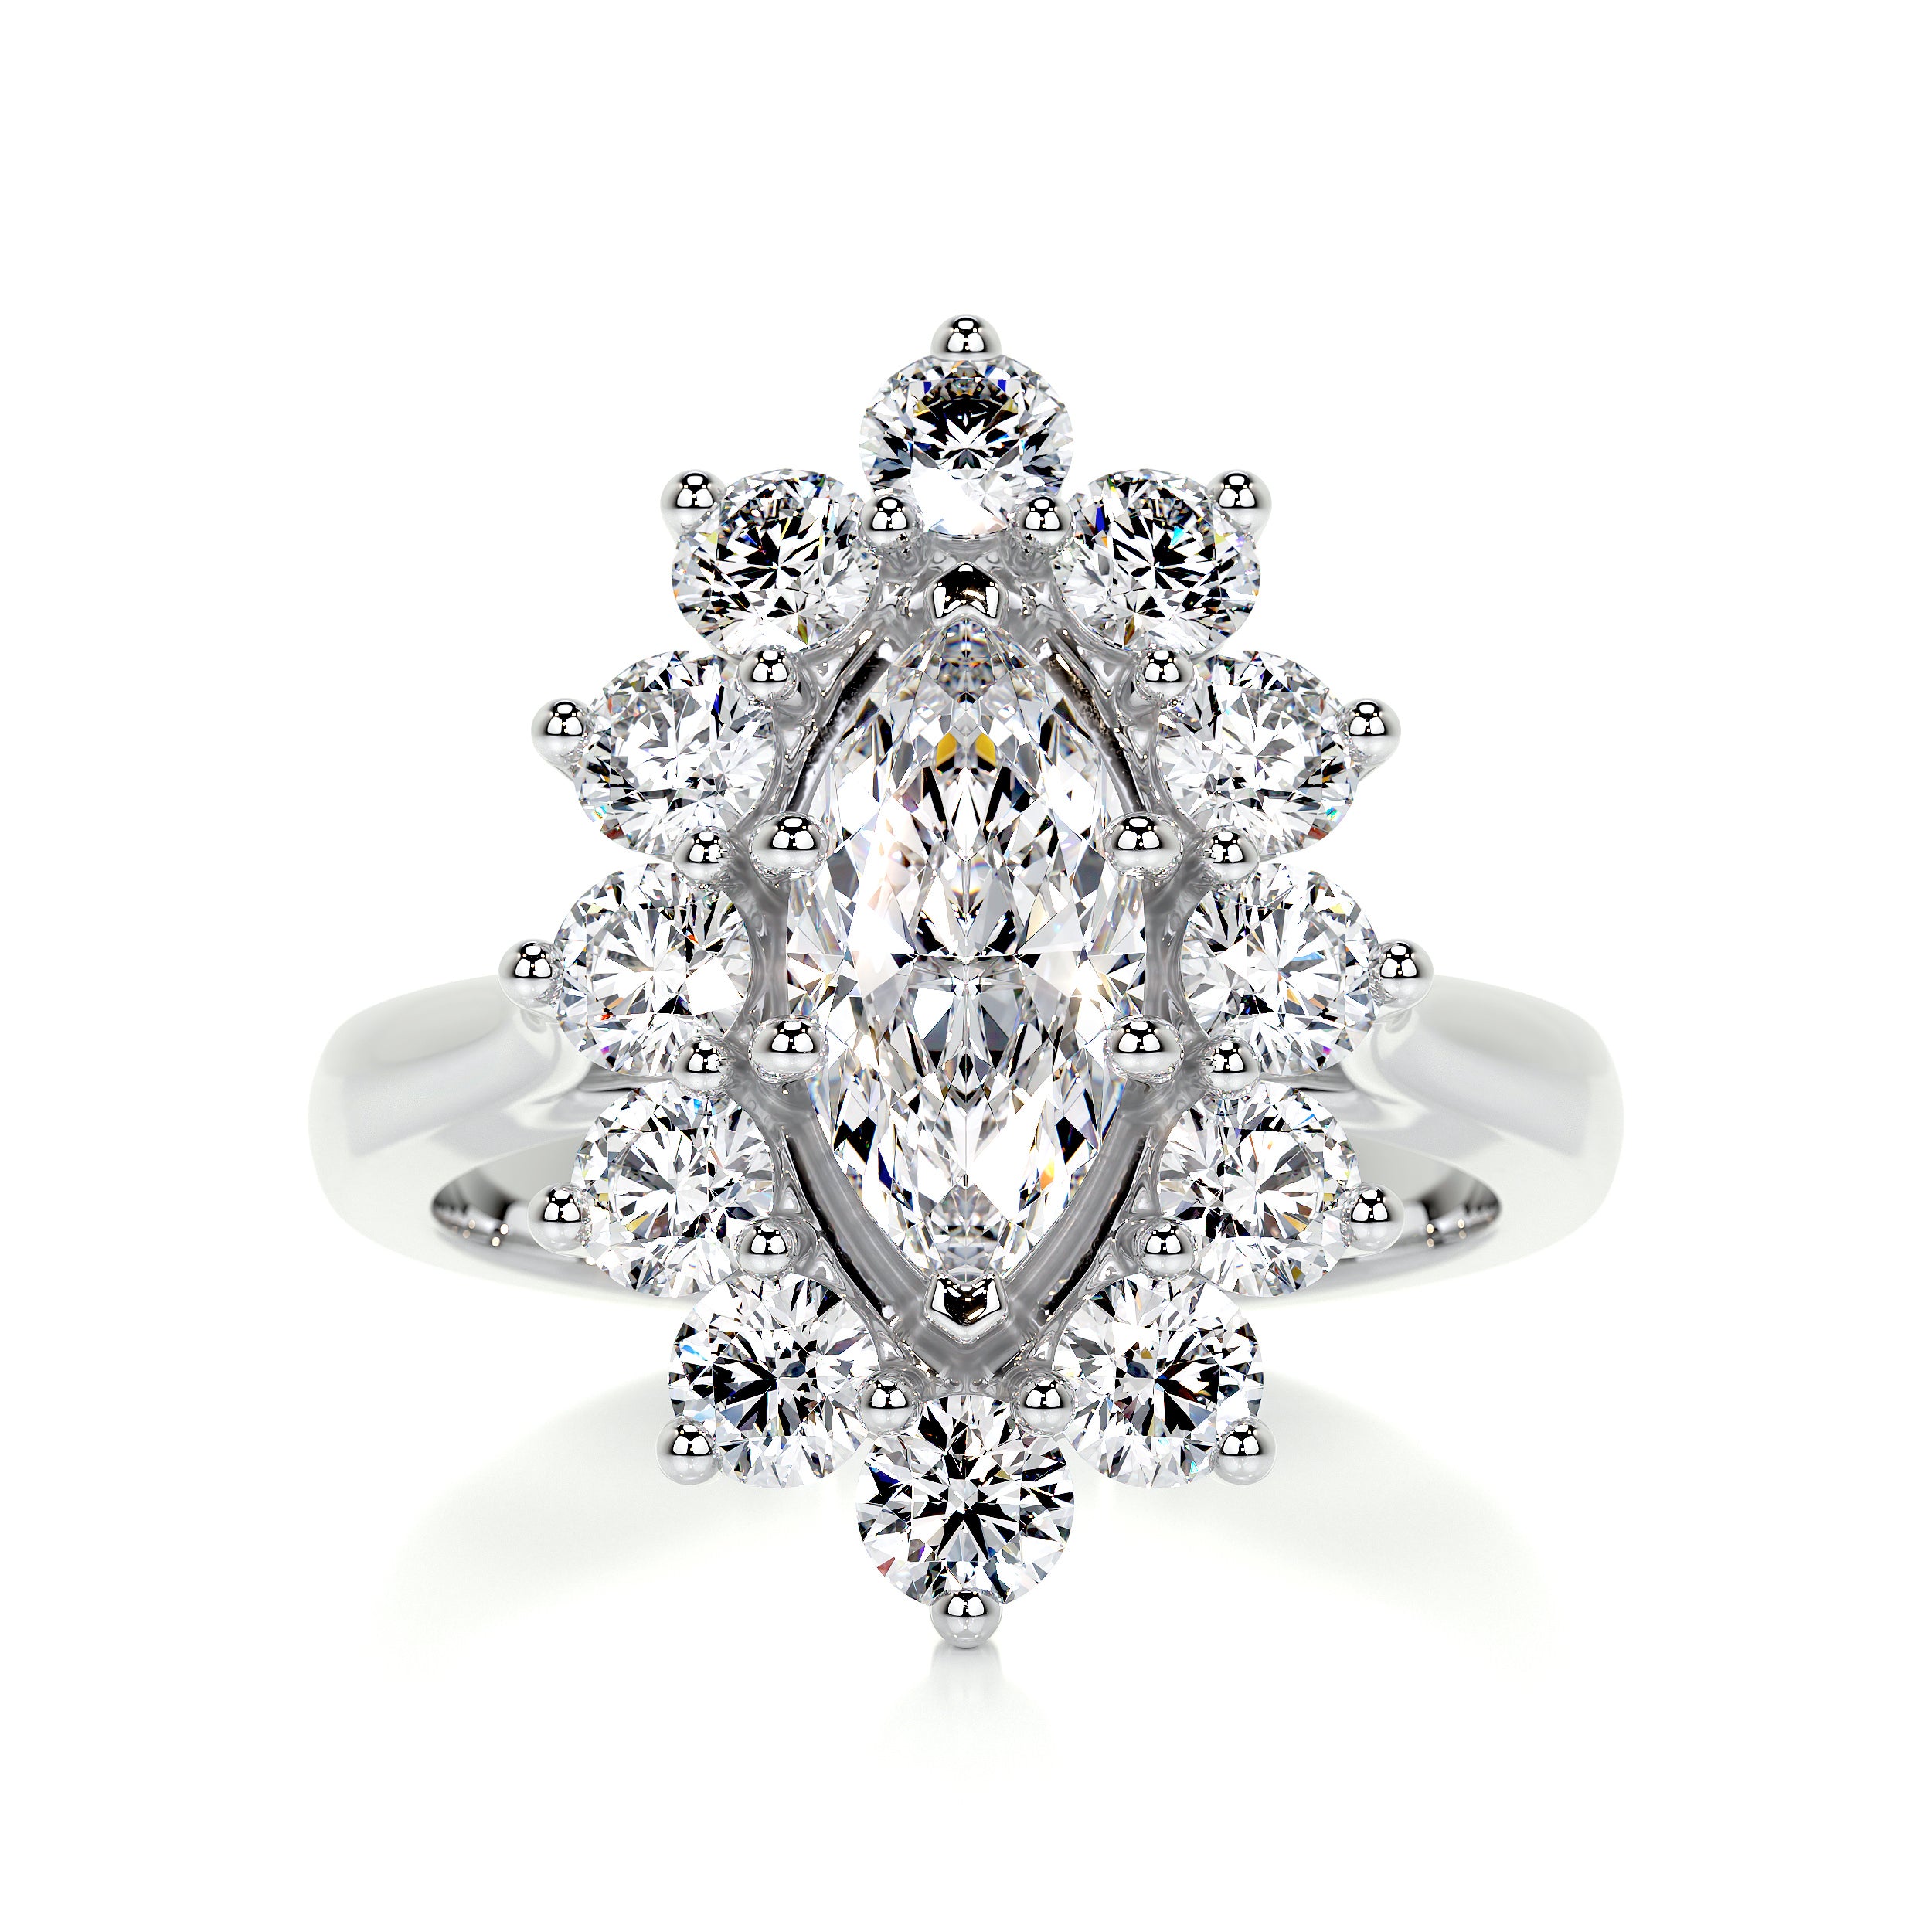 Yali Diamond Engagement Ring   (2.00 Carat) -14K White Gold